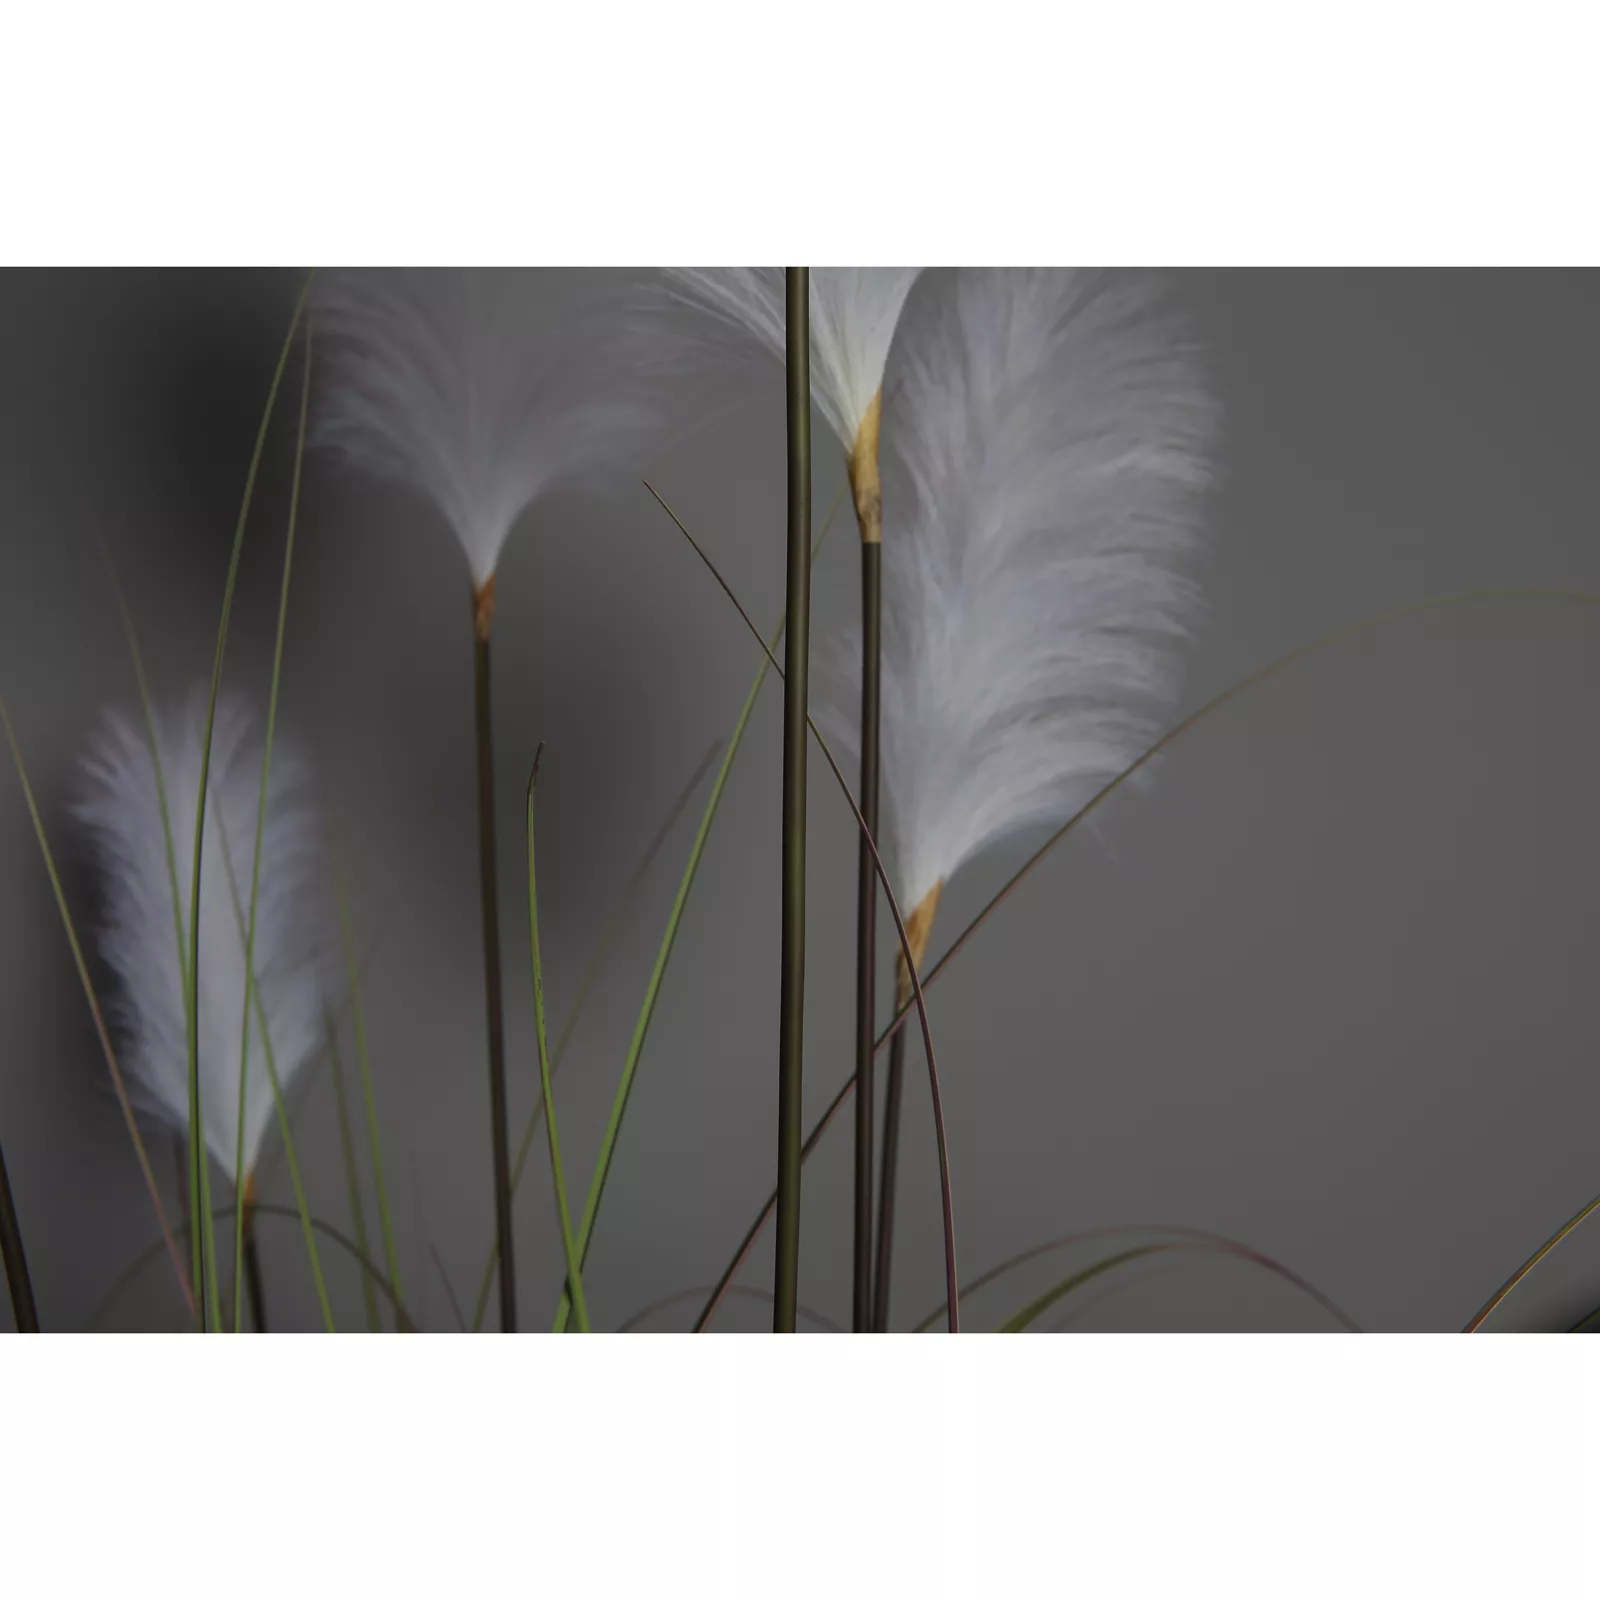 Kunstplant Gras Luxe (137cm) - Witte pluim